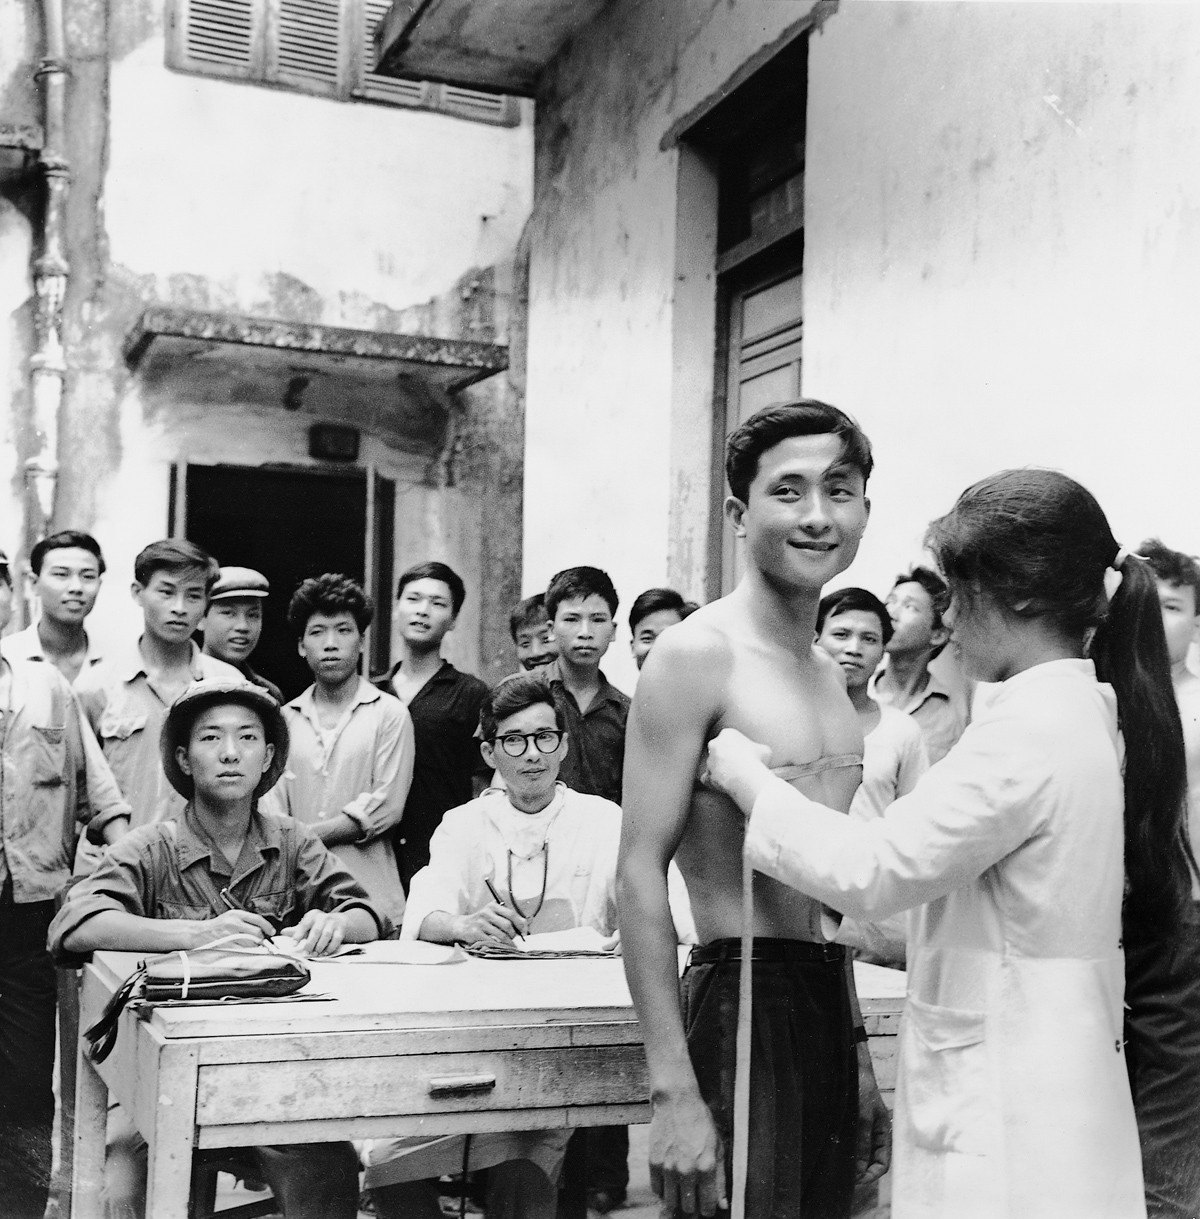 1967 - Novos recrutas são examinados em Haiphong, no norte do Vietnã. Em 1950, o exército vietnamita tinha 35 mil homens, em 1975, eram 500 mil combatentes (Foto: Divulgação)